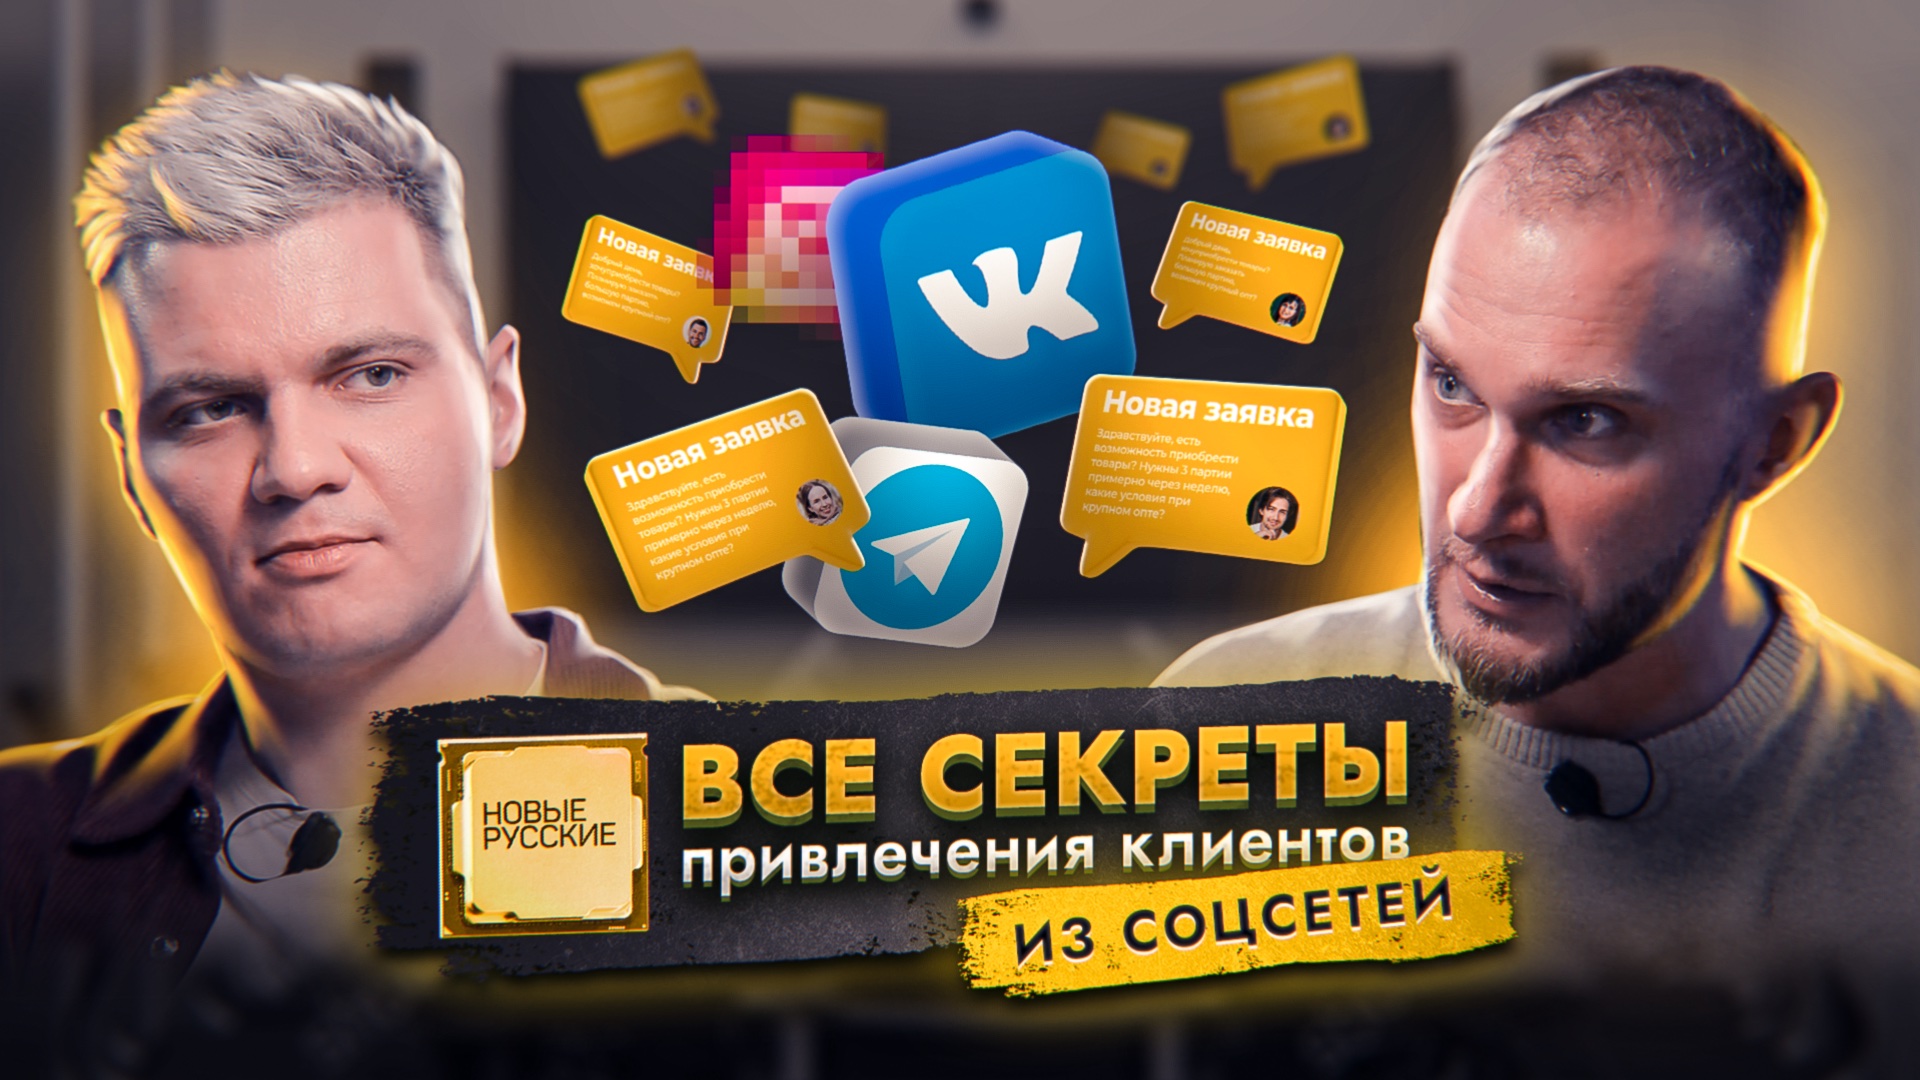 Секреты привлечения клиентов в соцсетях | Продвижение бизнеса через блогеров | Проект Новые русские